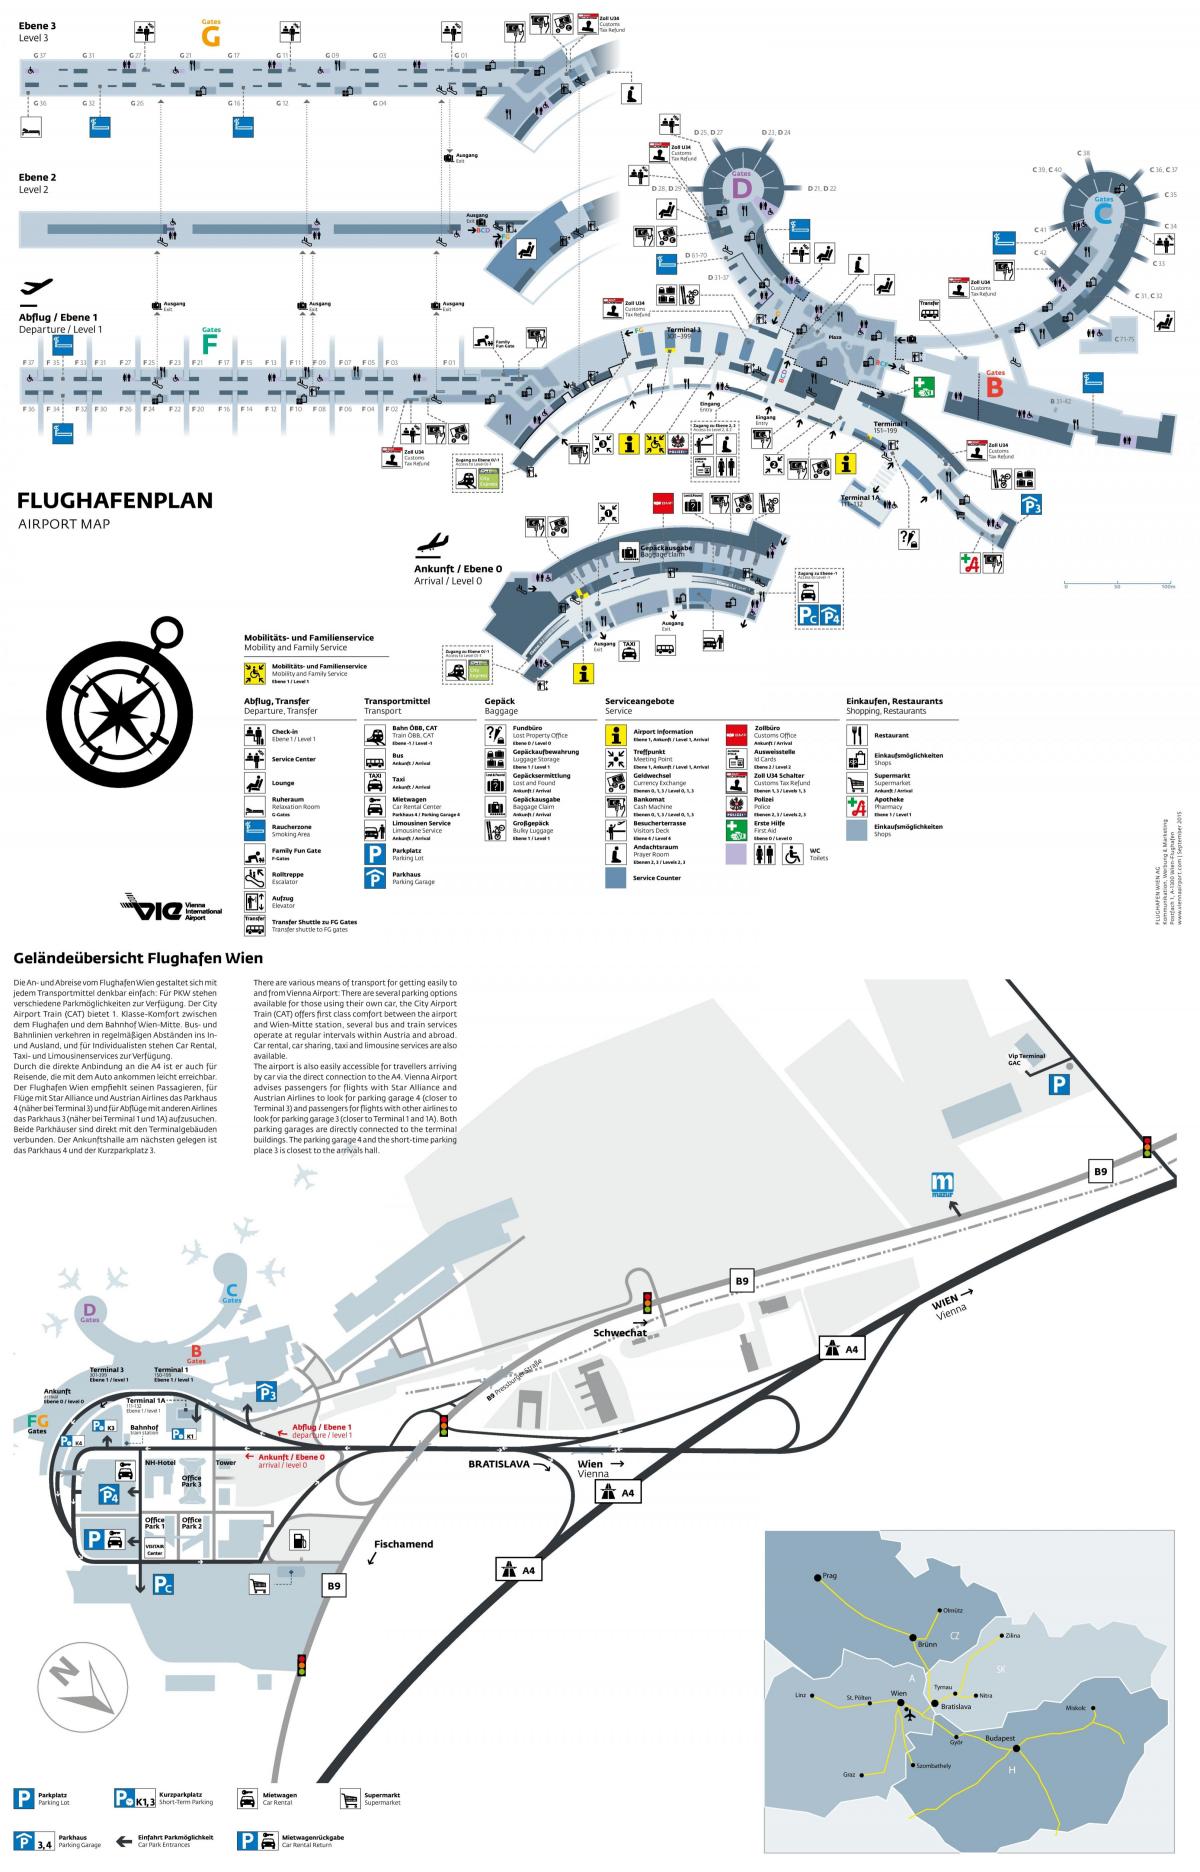 Vienna airport keberangkatan peta